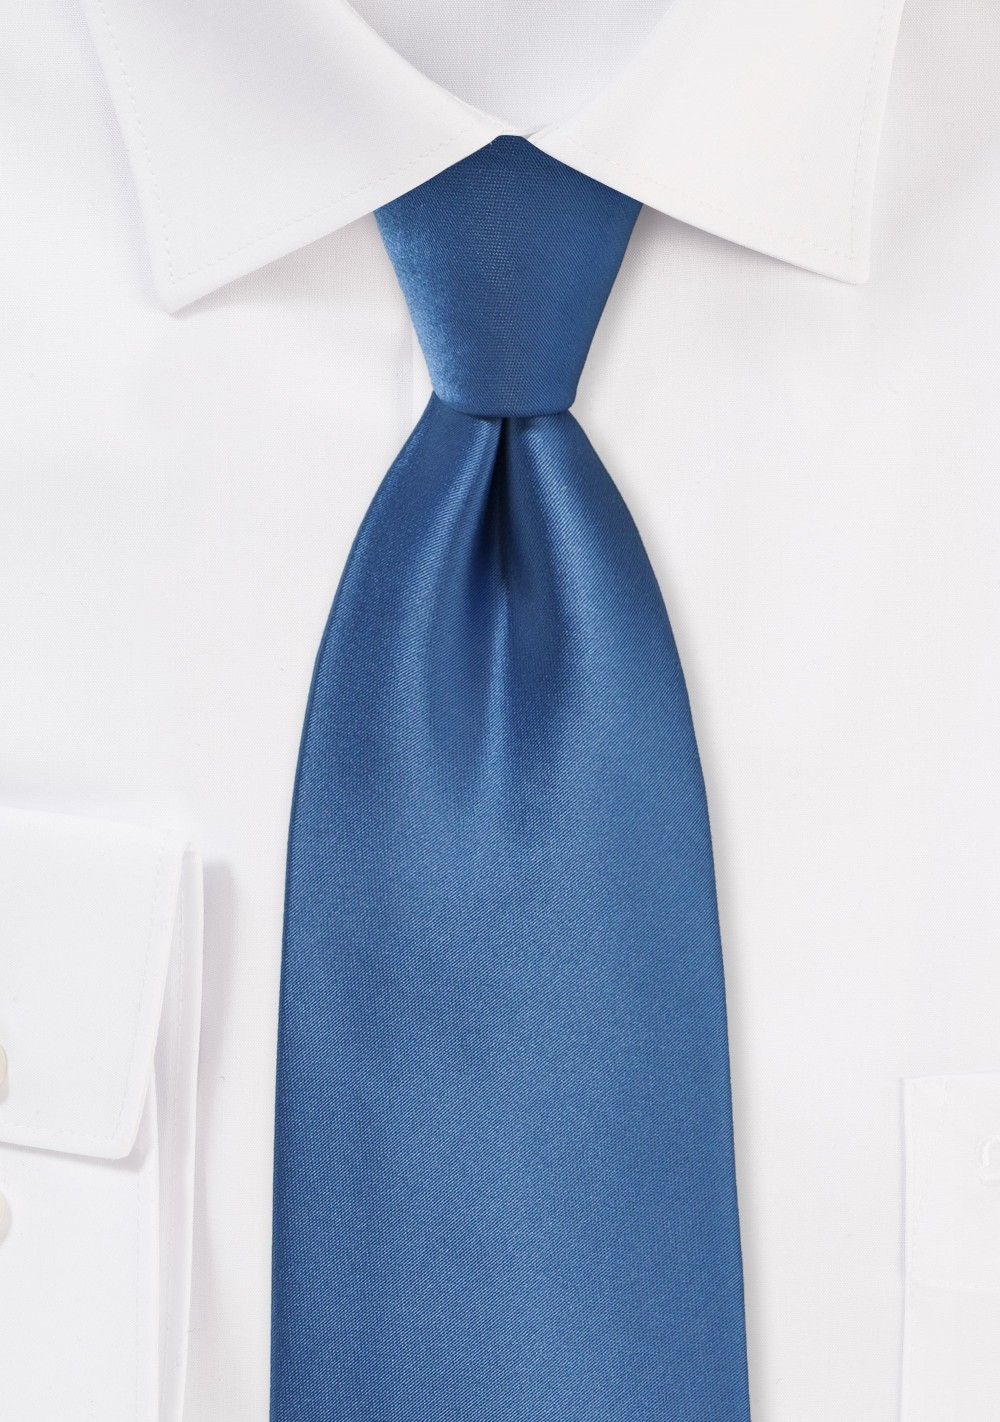 Steel Blue Tie in Long Size